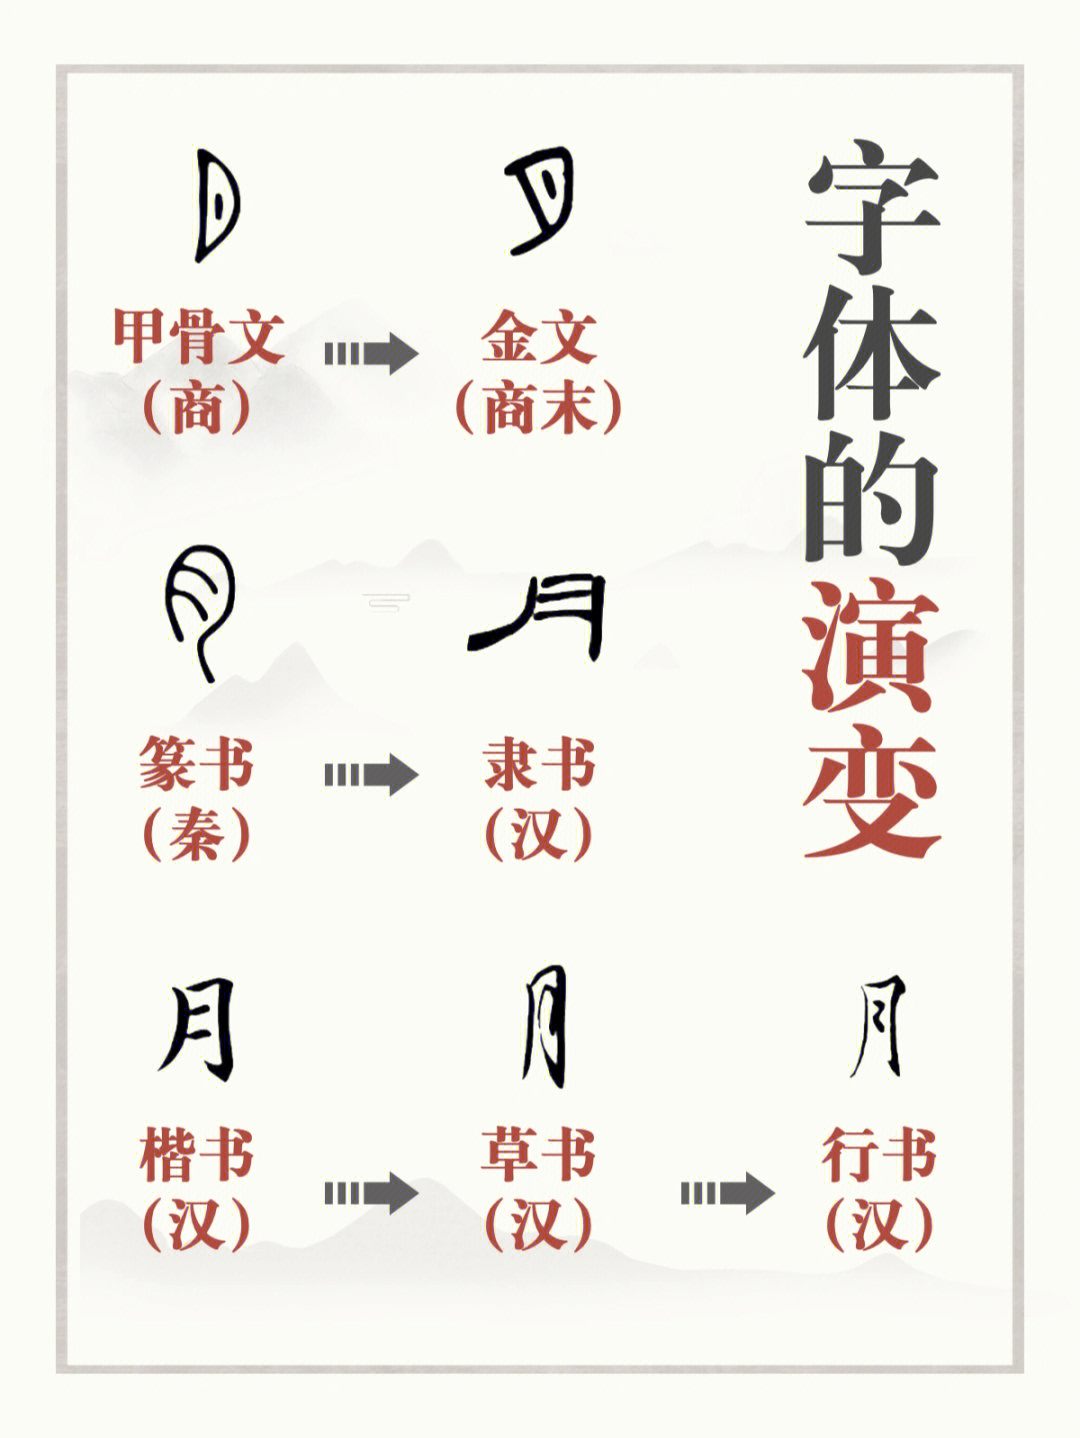 从甲骨文到现代简体字,中国文字演变过程你了解多少